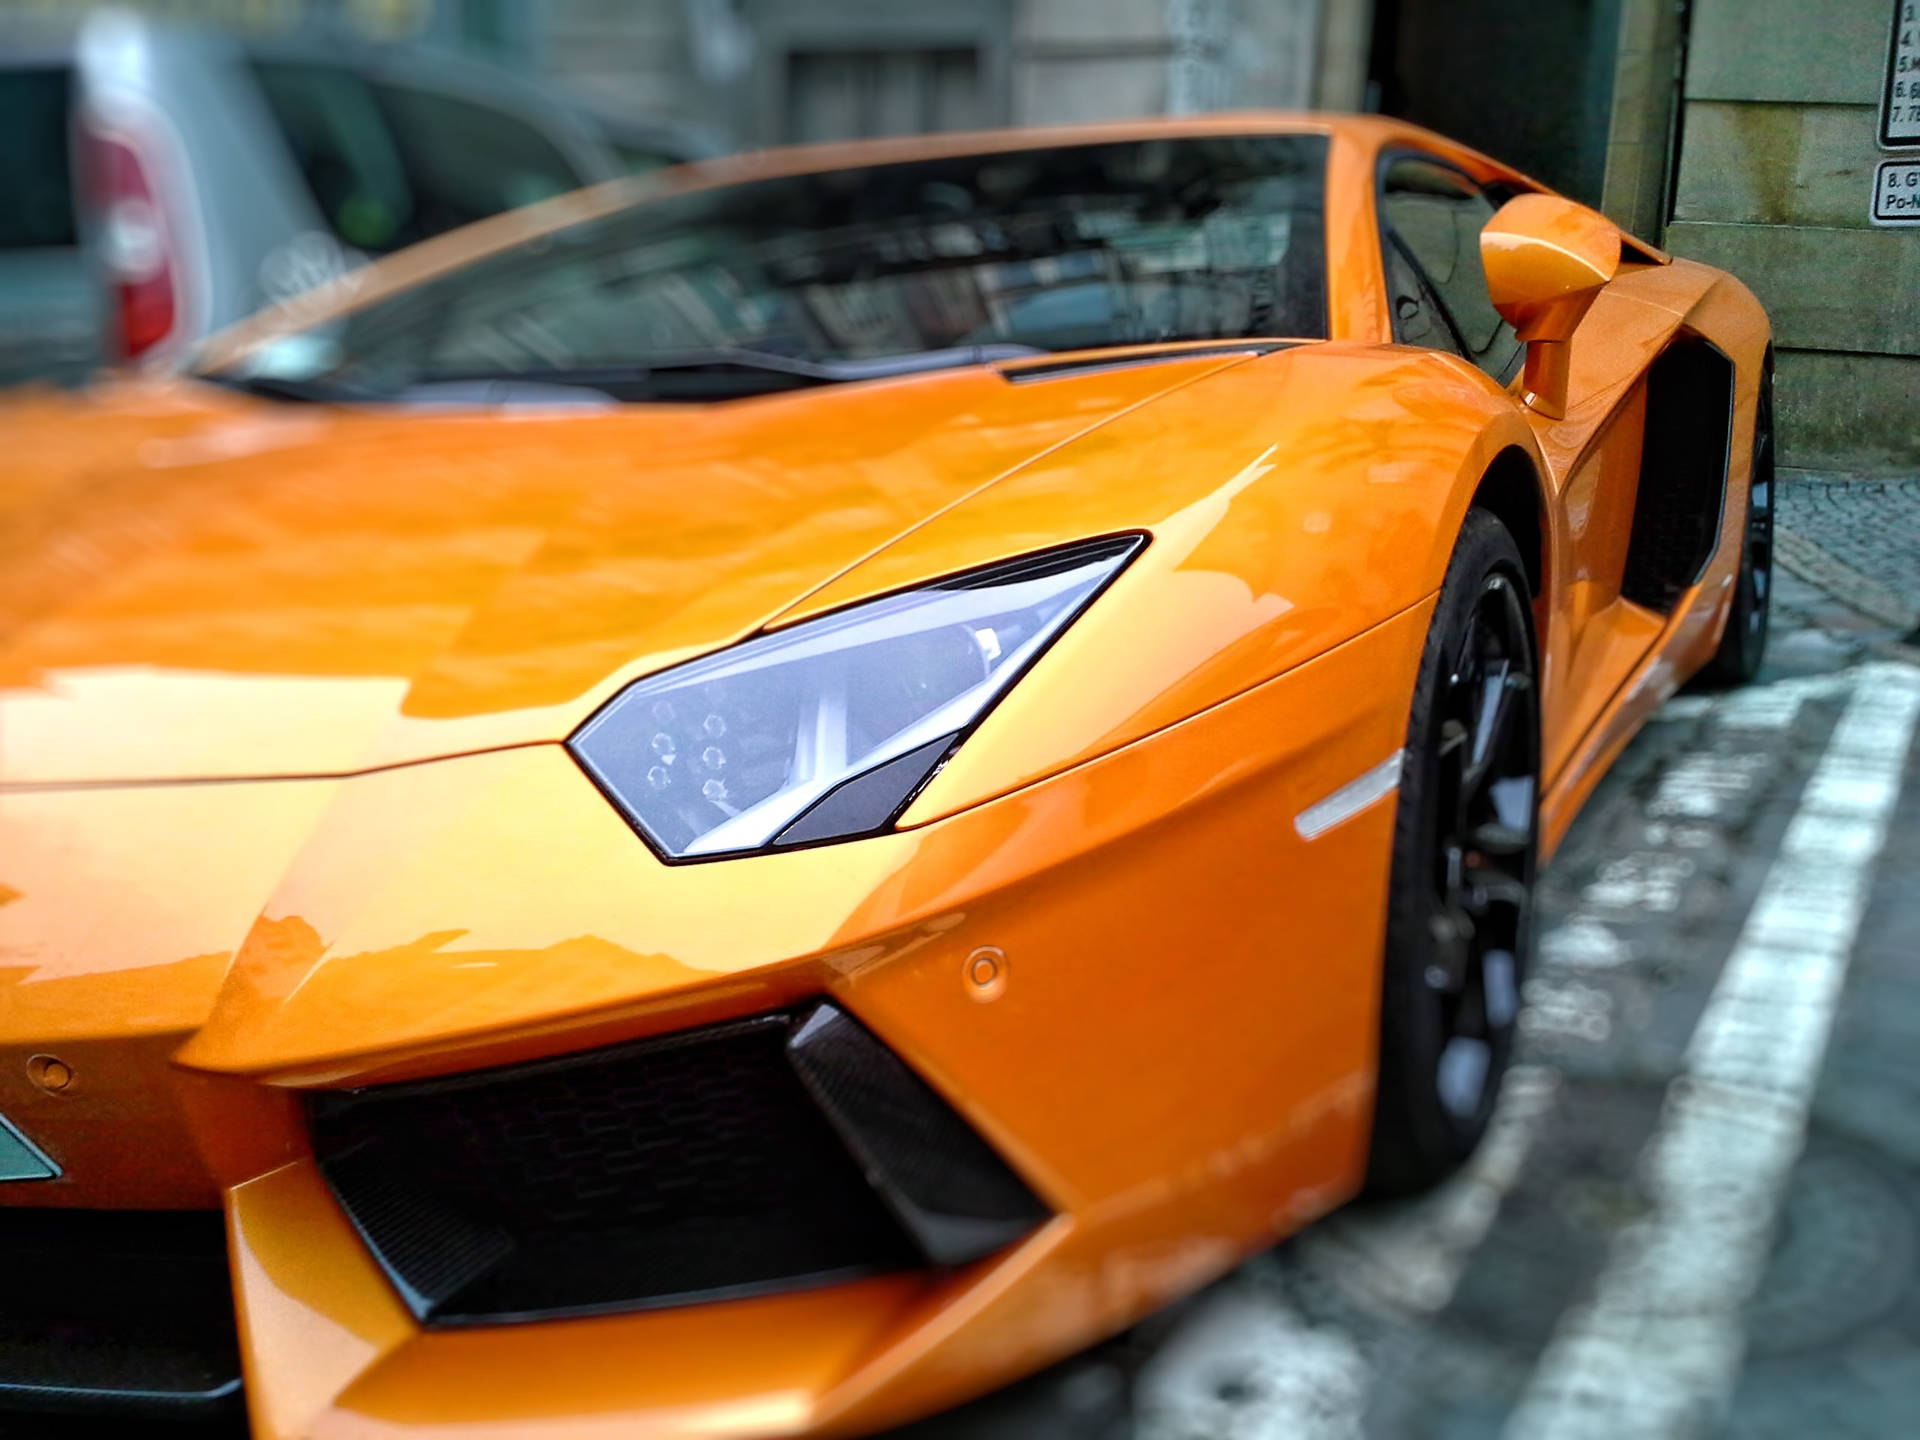 Orangey Metallic Best Car Choice Background